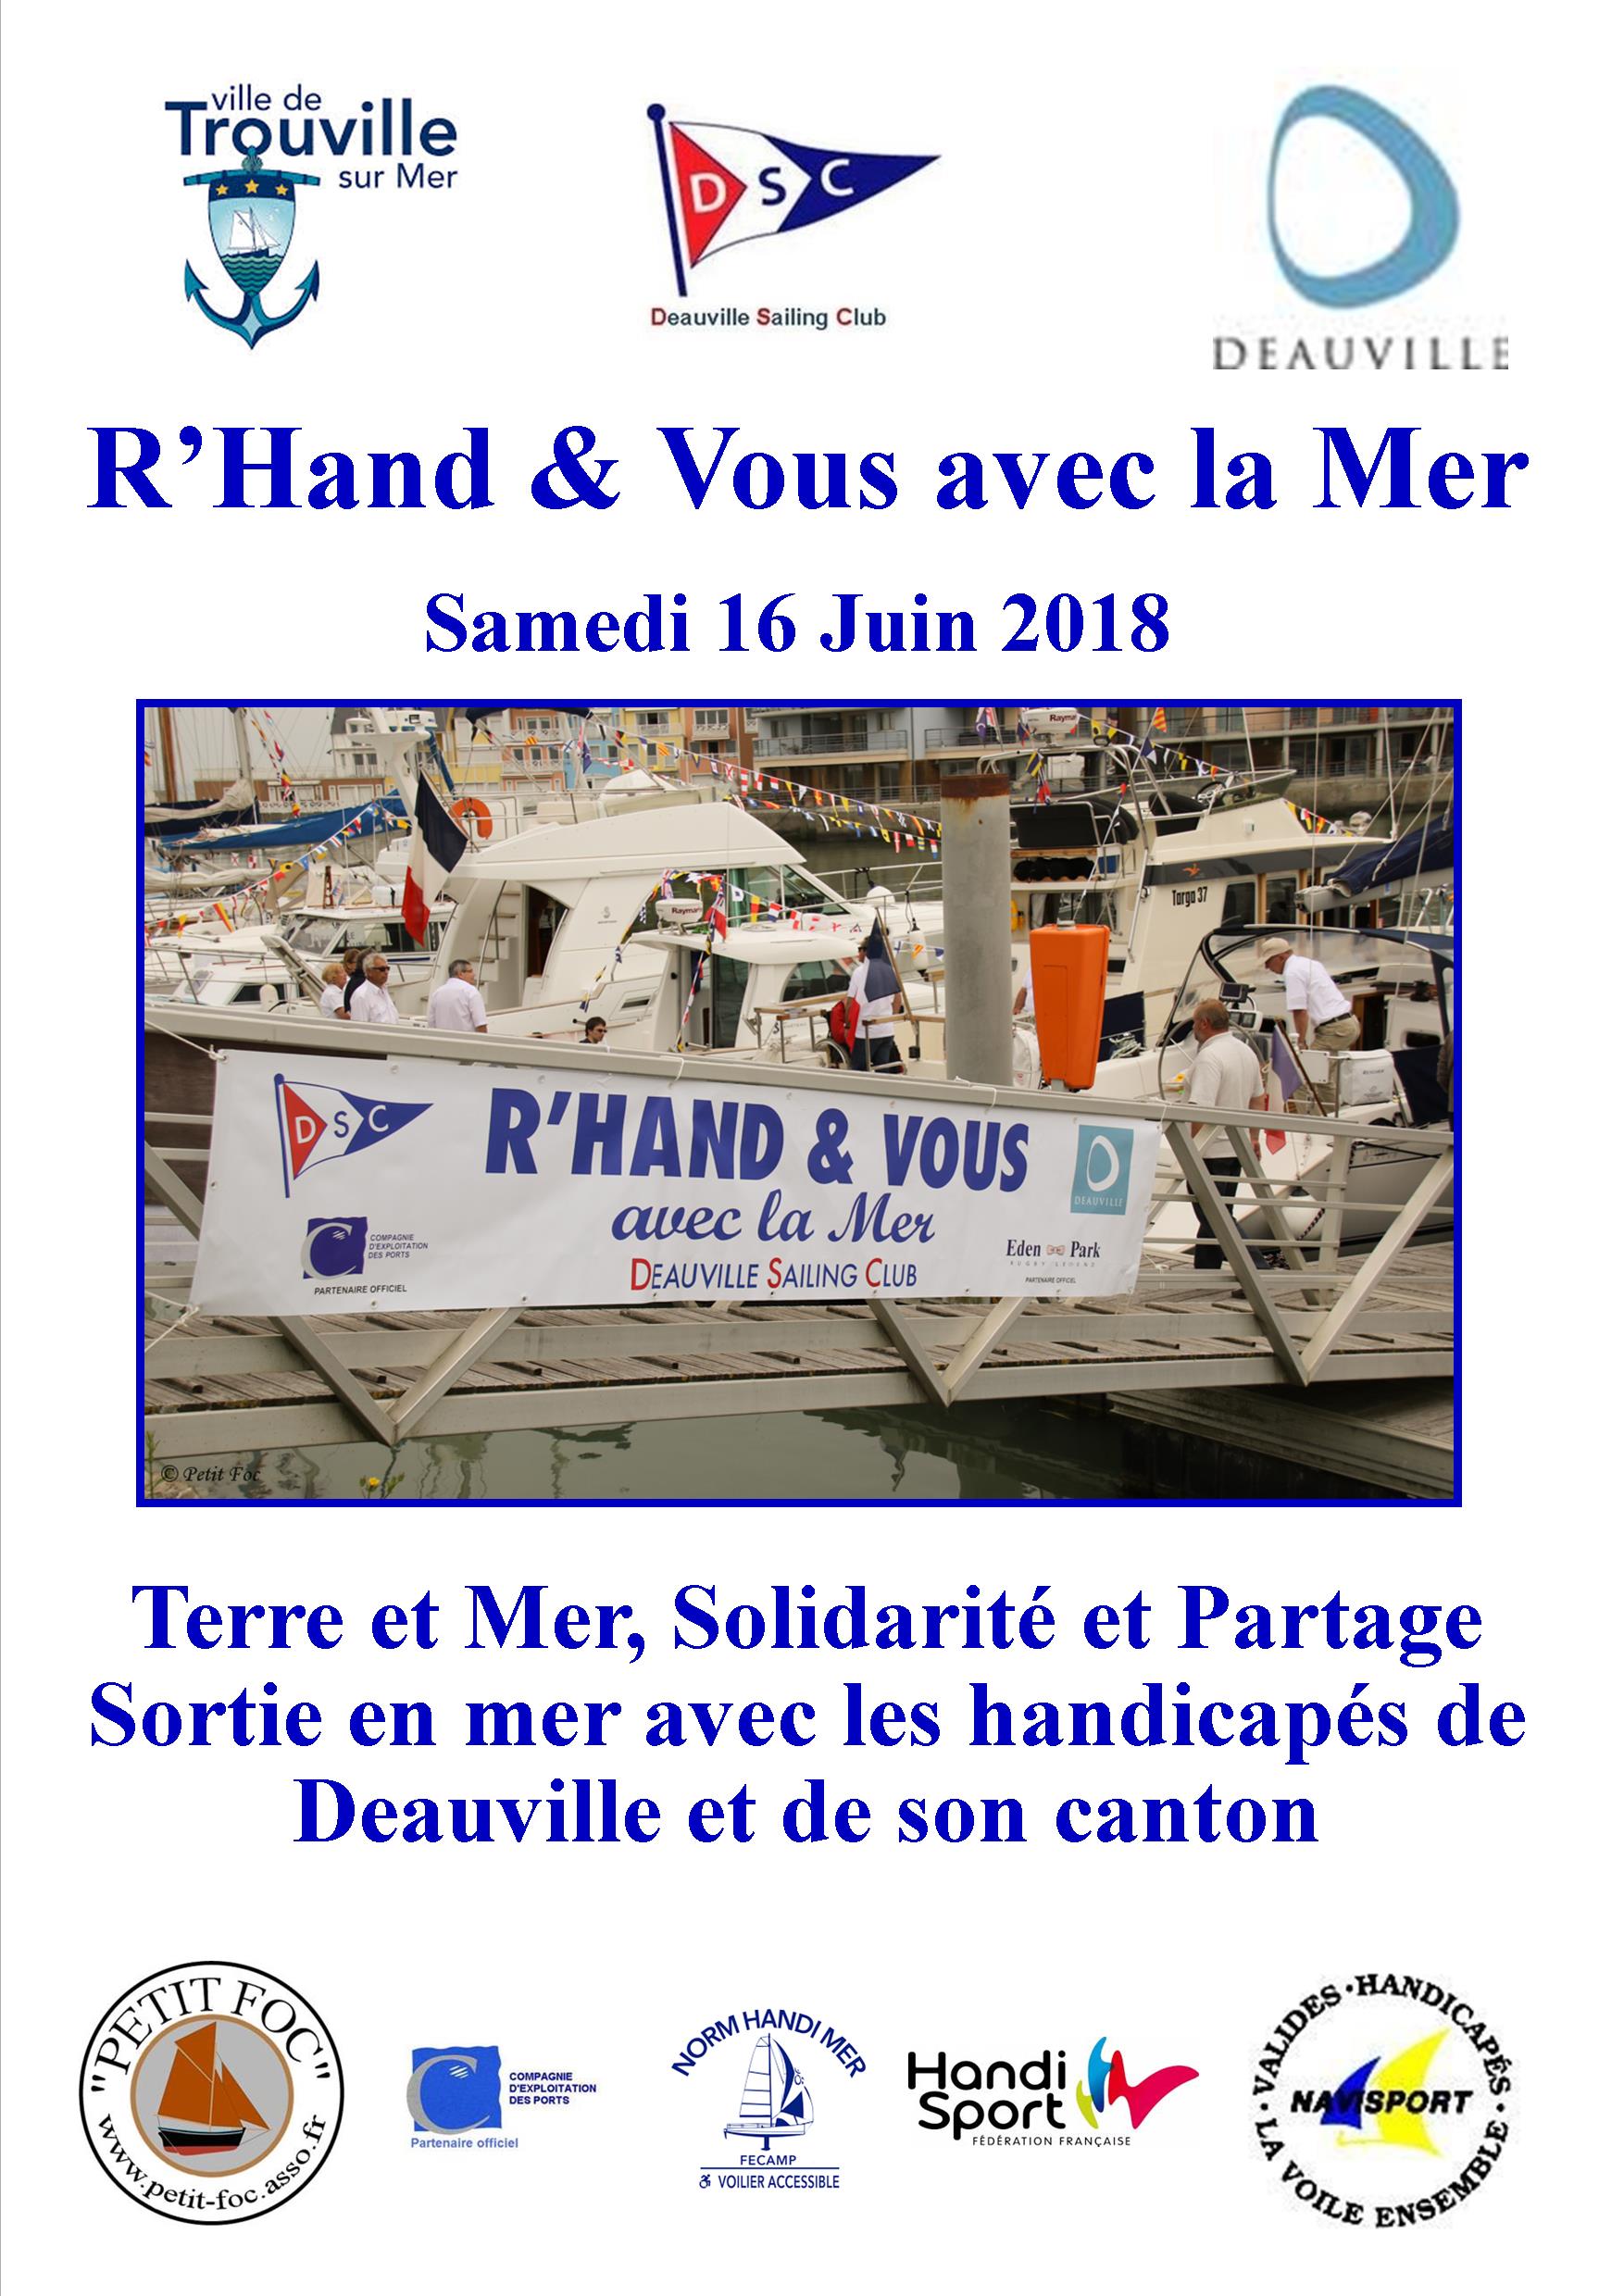 R'Hand & Vous 2018 affiche